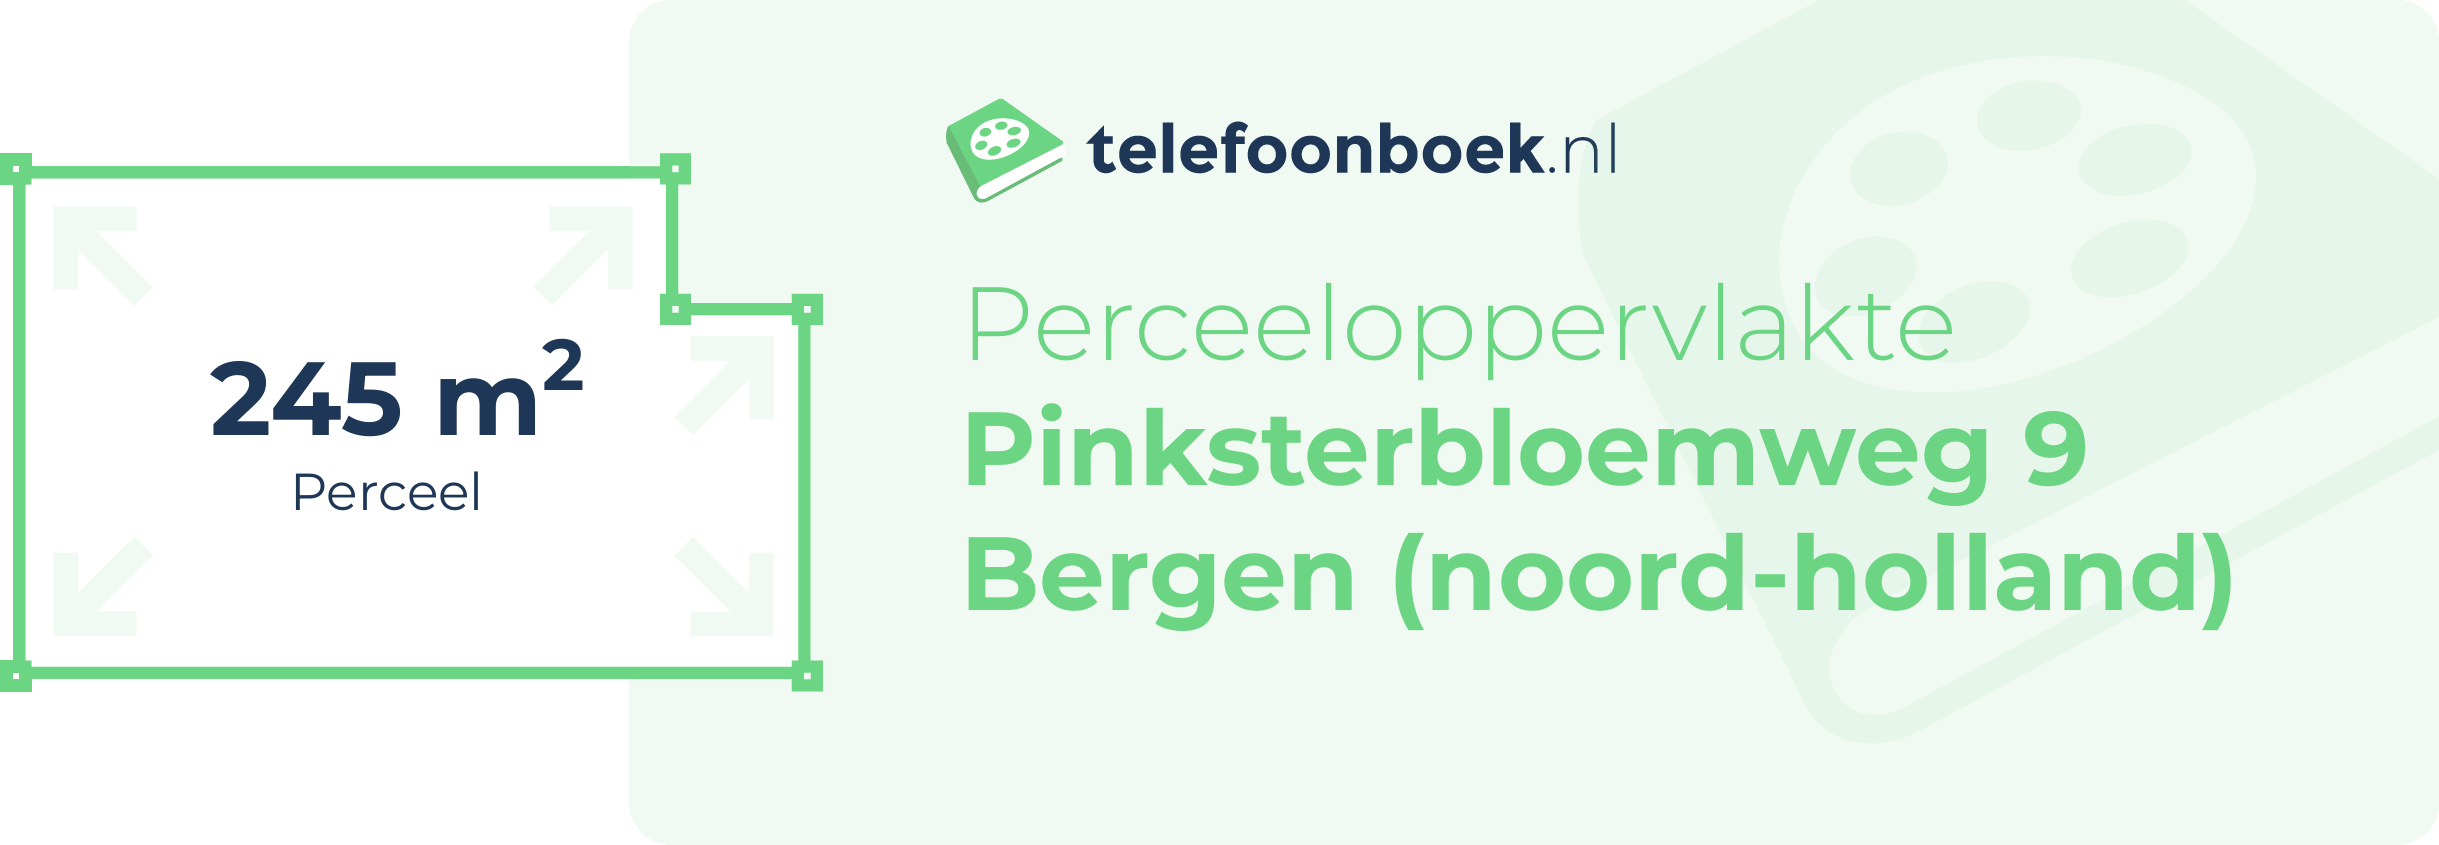 Perceeloppervlakte Pinksterbloemweg 9 Bergen (Noord-Holland)